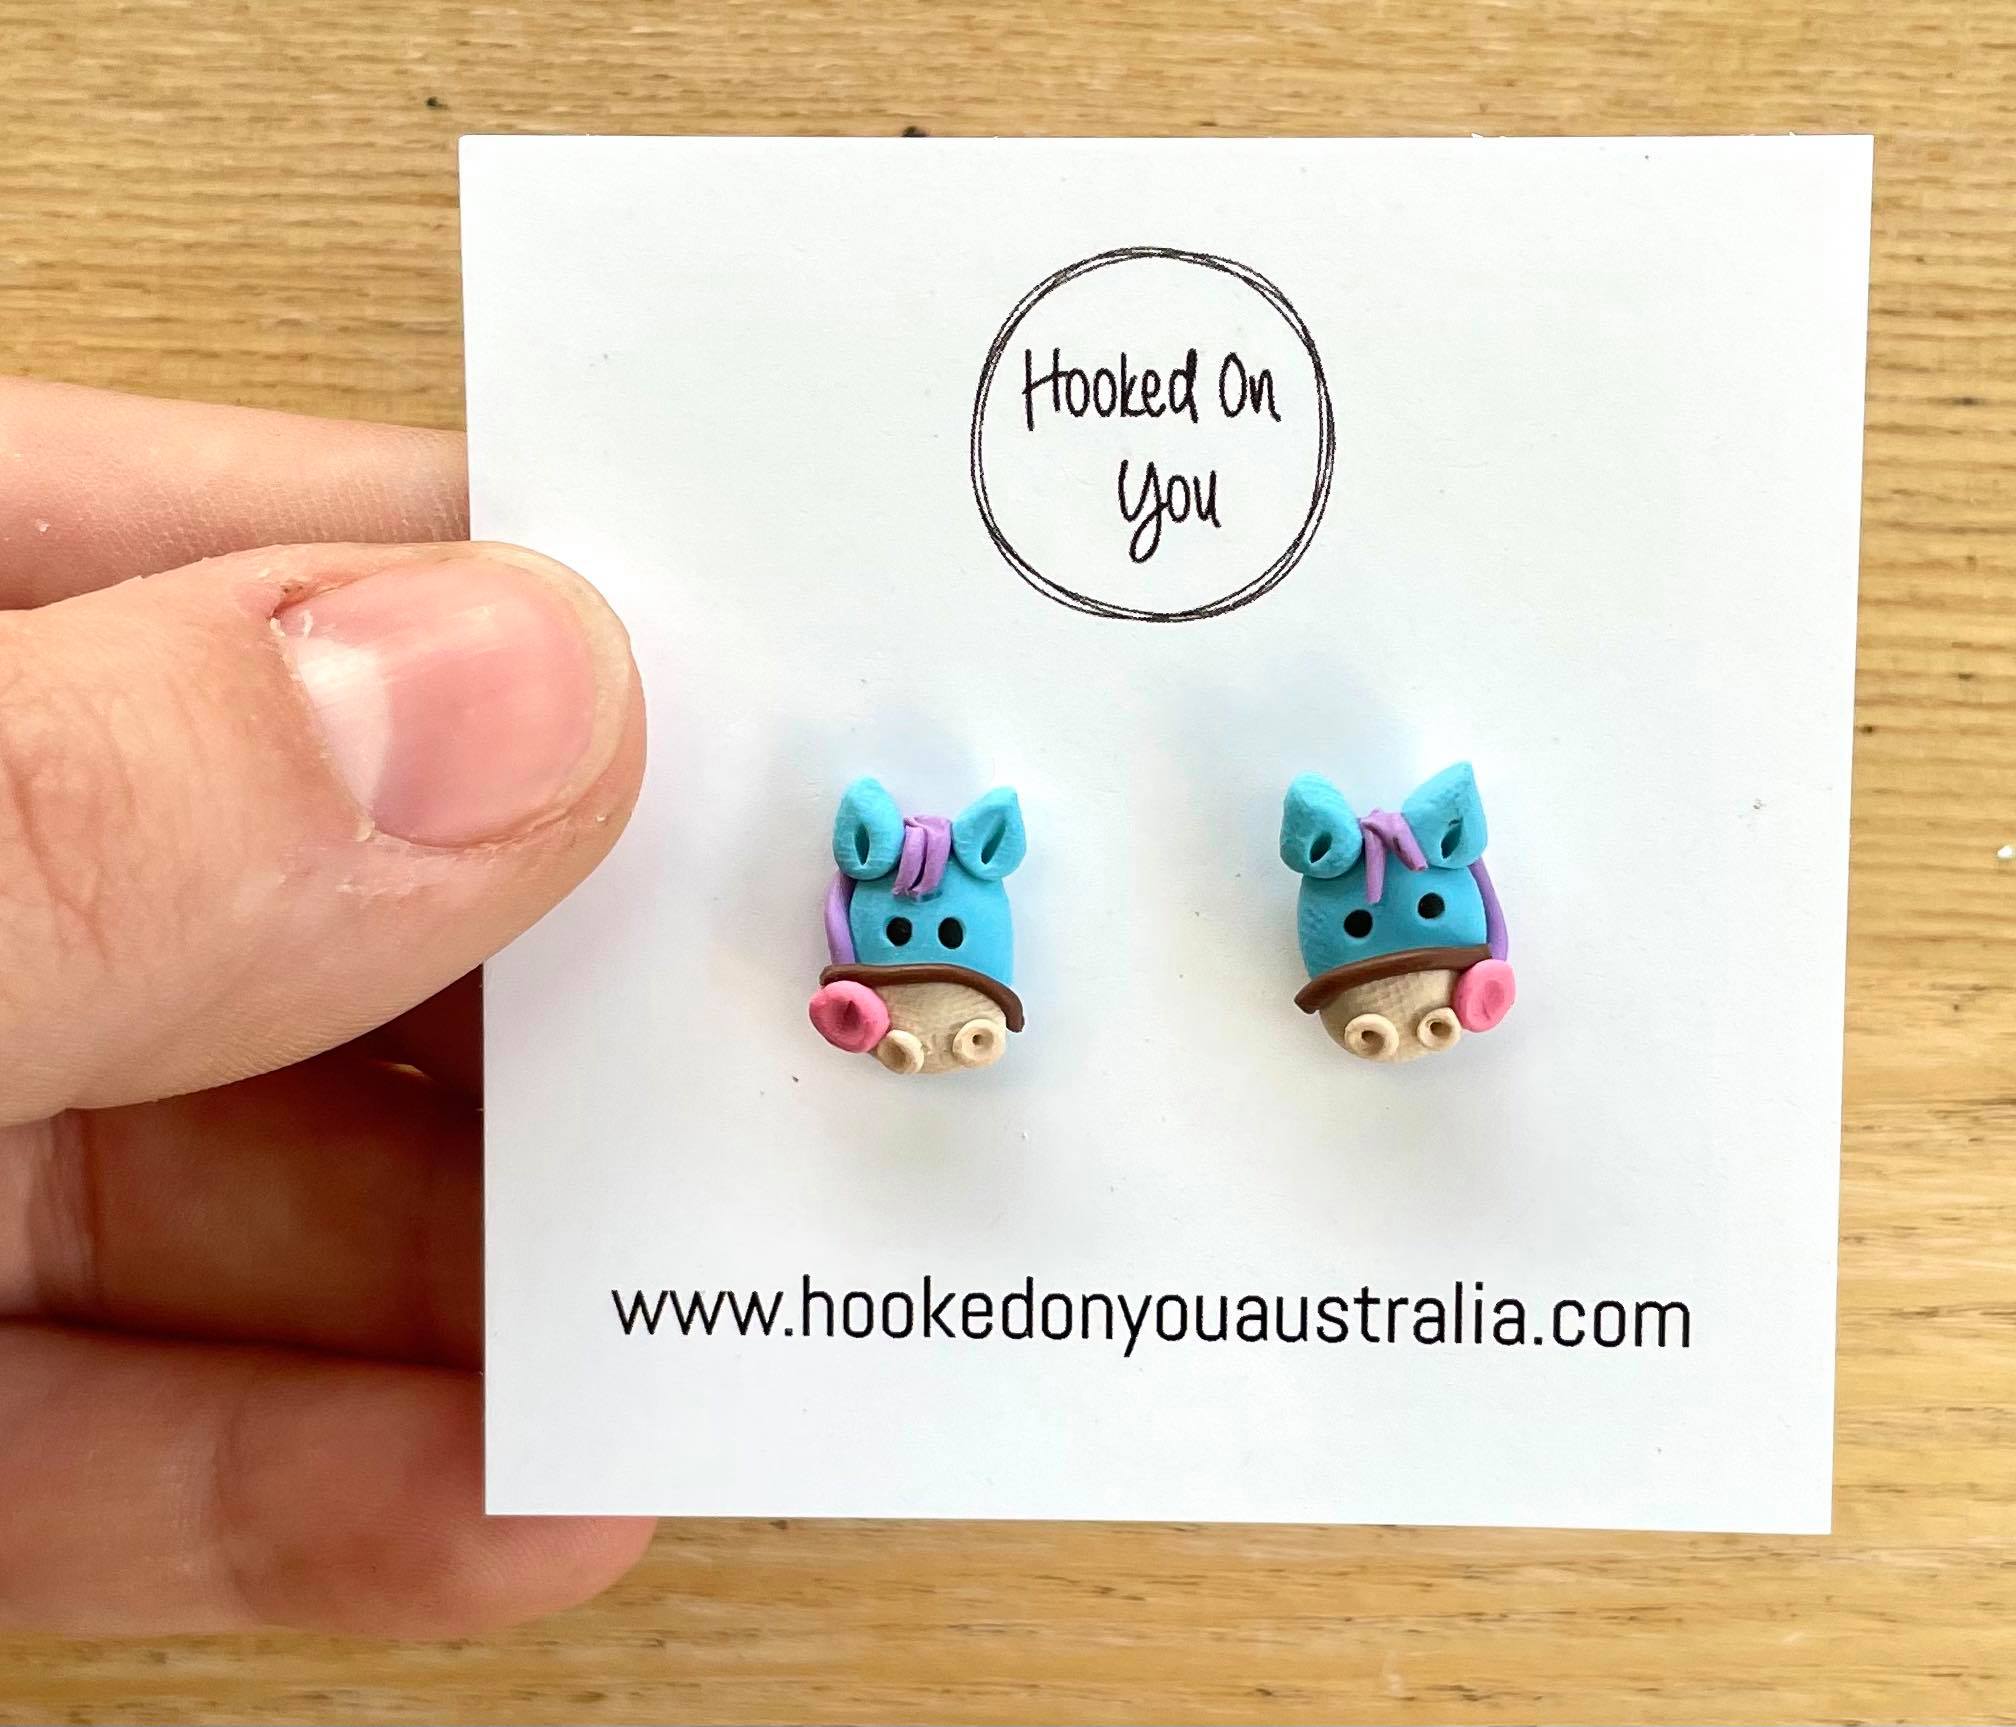 statement earrings australia